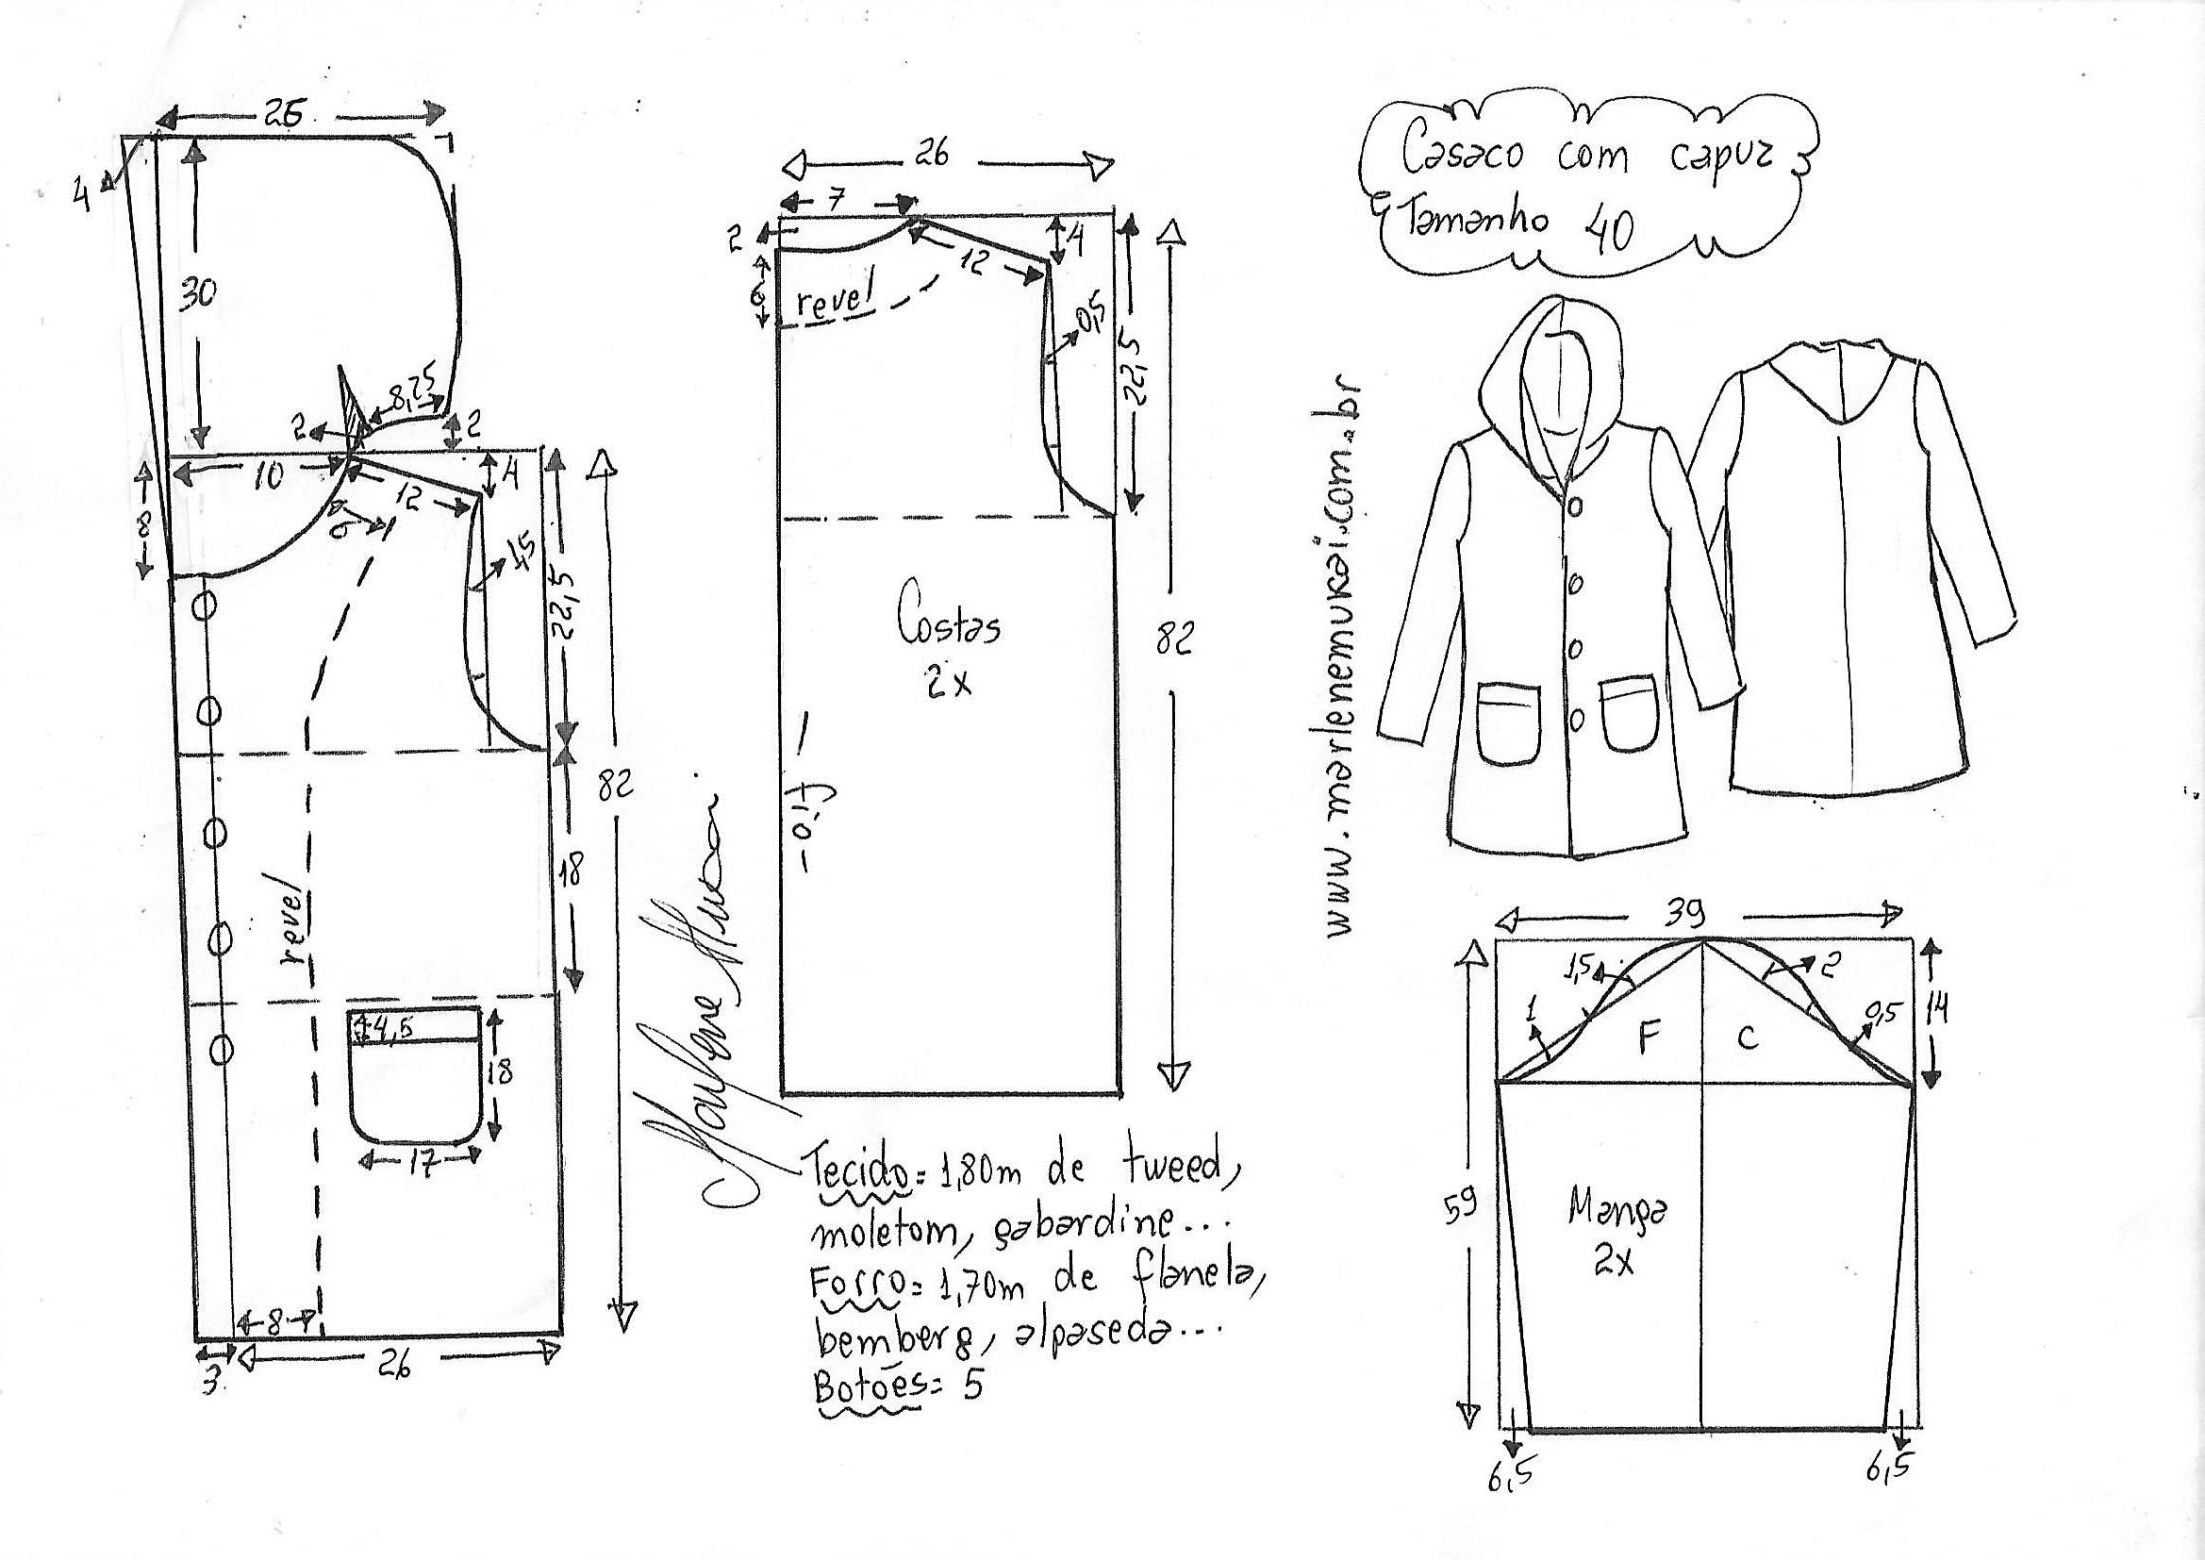 Выкройка пальто с рукавом реглан: особенности моделирования на примере мастер-класса с фото-инструкциями по пошиву пальто полуприлегающего силуэта